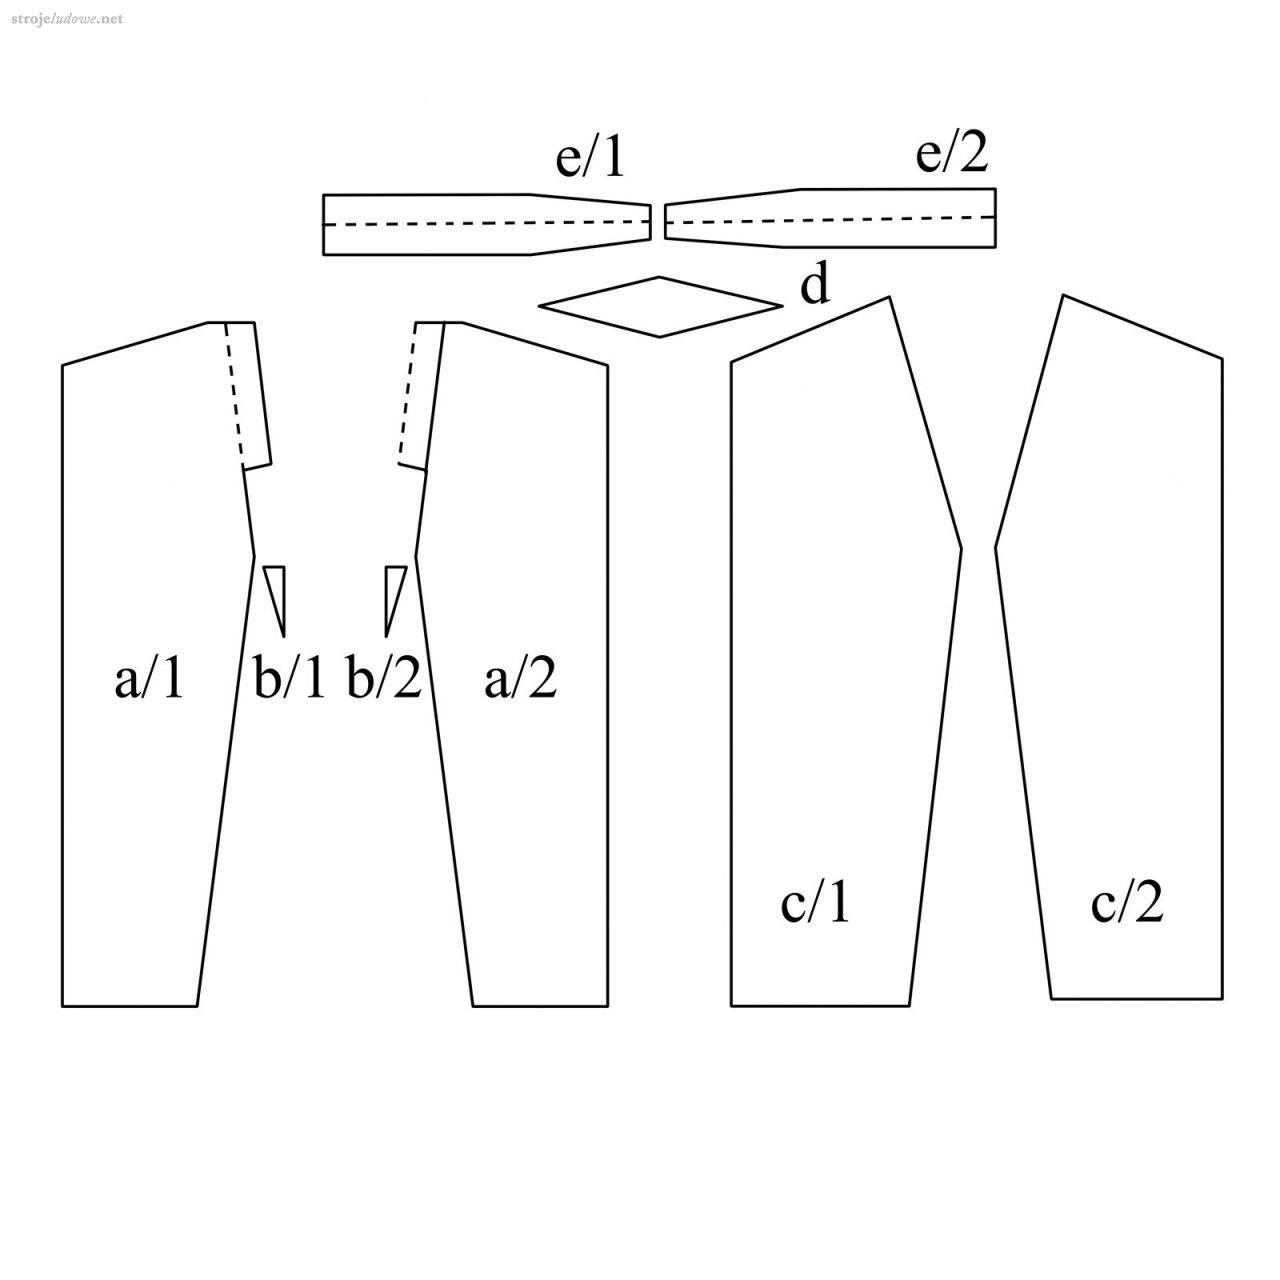 Wykrój spodni:
a/1 i a/2 - tył; b/1 i b/2 - kliny poszerzające; c/1 i c/2 - przód; d - klin poszerzający; e/1 i e/2 - pasek.
Adam Wójcik, Strój pogórzański, Kraków 1939, s.19.  